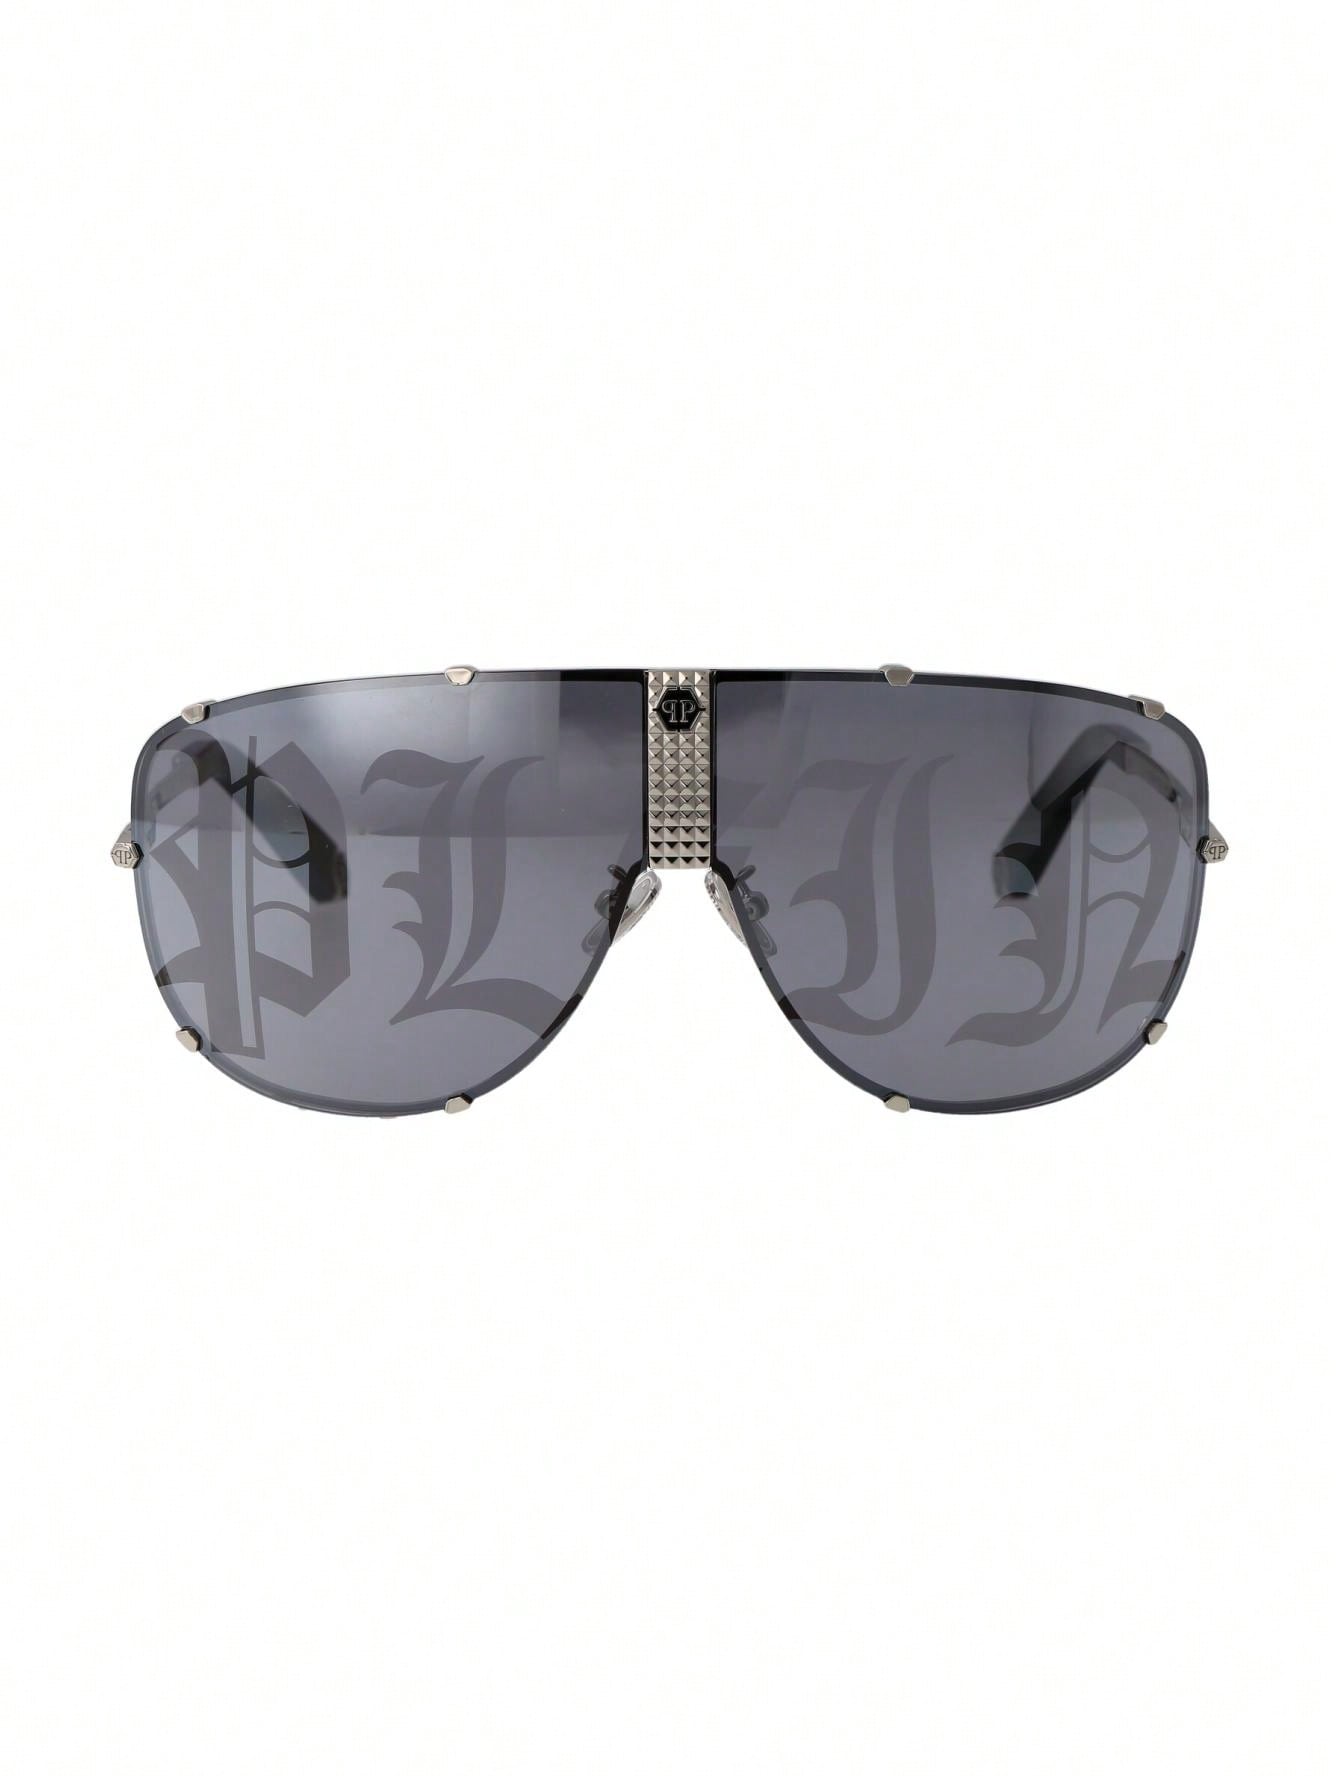 Мужские солнцезащитные очки Philipp Plein DECOR SPP075M579L, многоцветный солнцезащитные очки philipp plein 025s 700